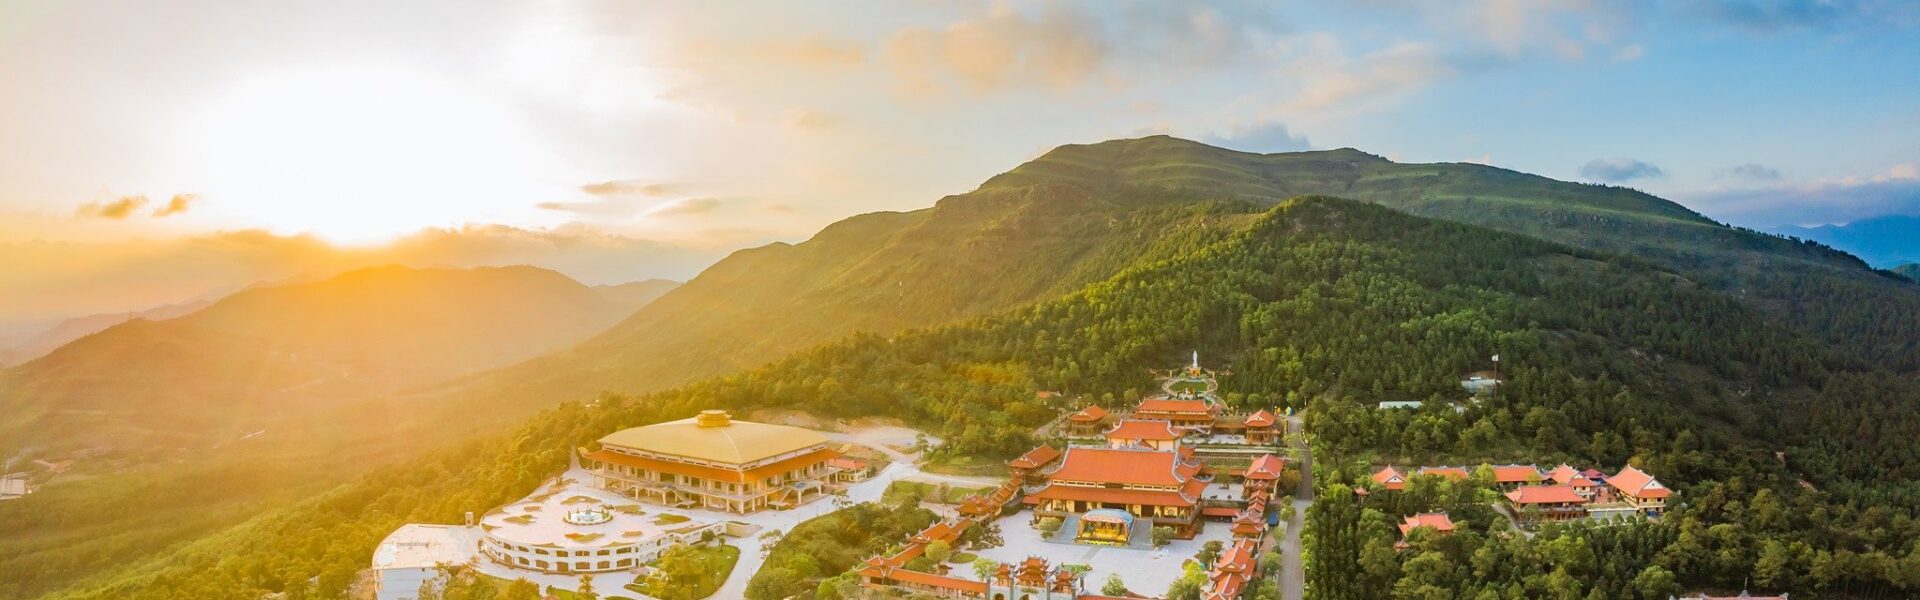 Top 15 ngôi chùa lớn nhất Việt Nam được du khách yêu thích - Ảnh đại diện